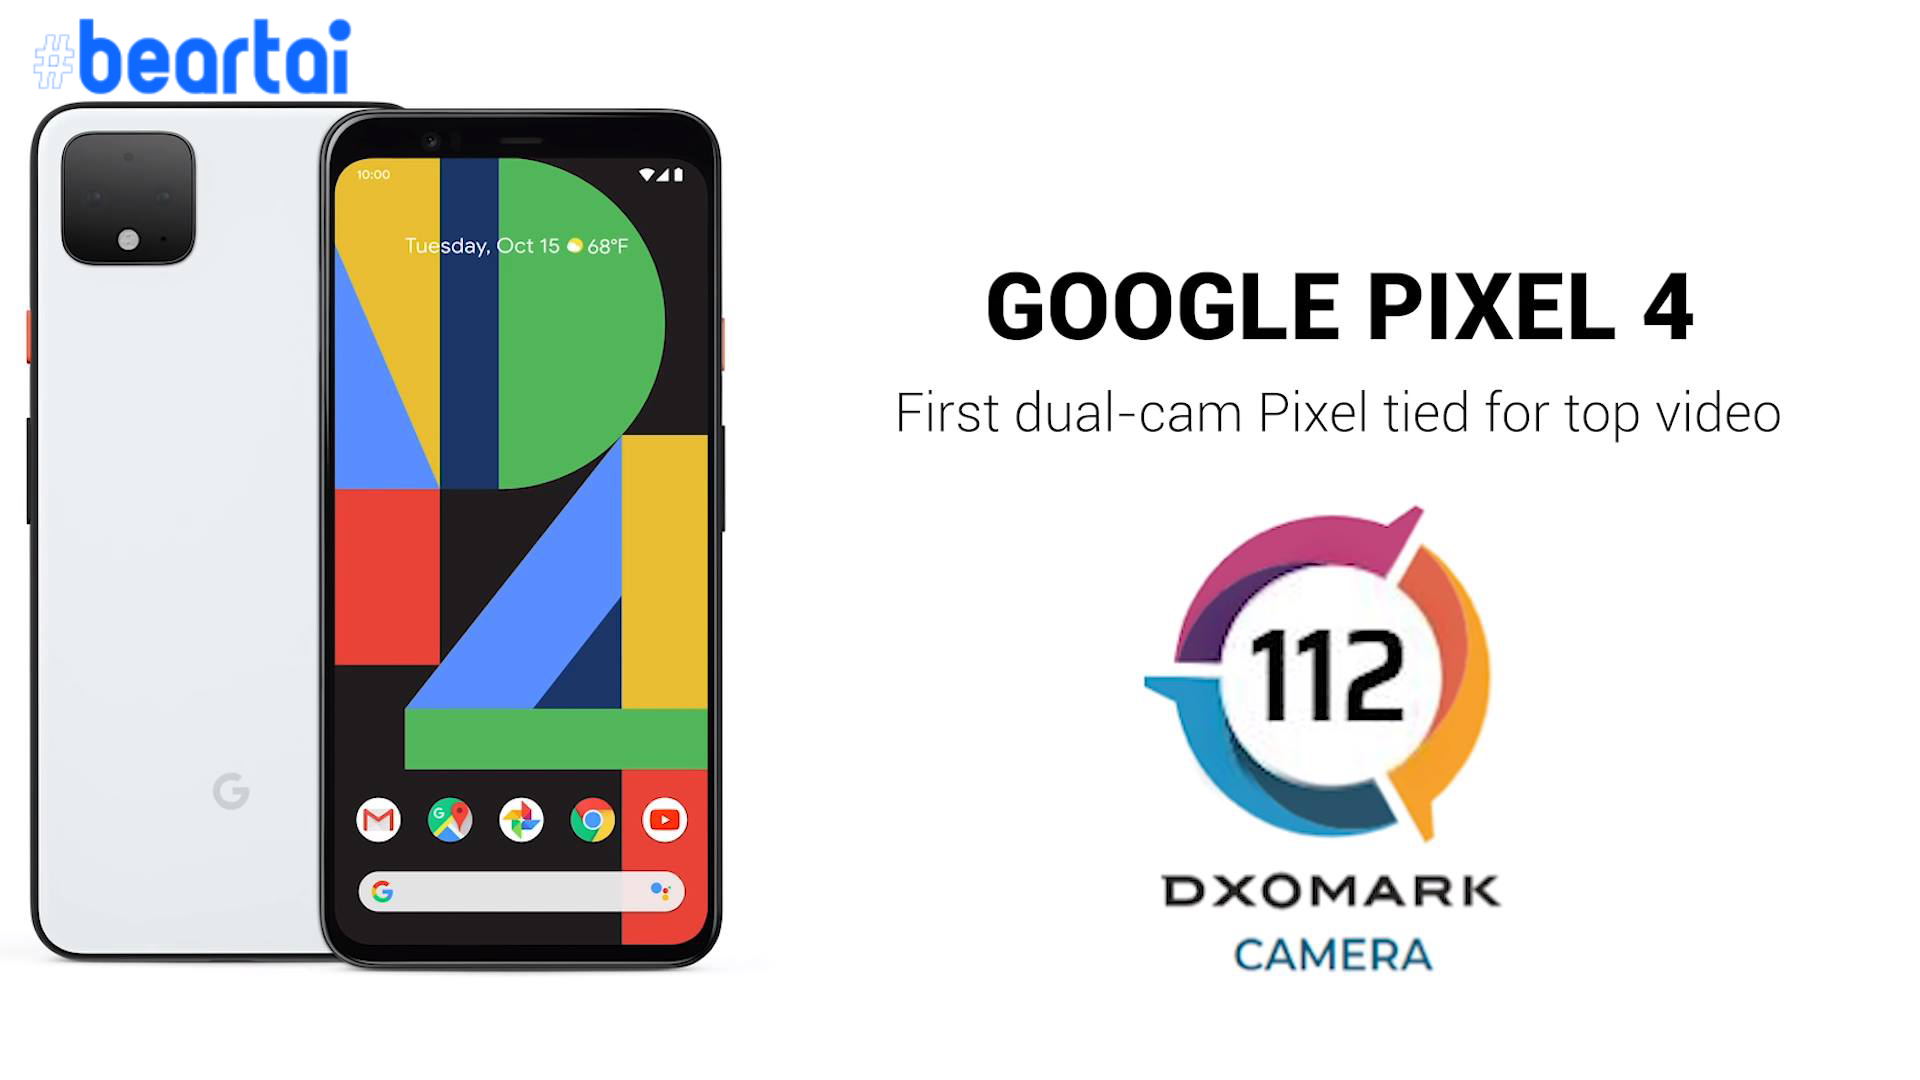 หวยออก 112… คะแนน DxOMark ของ Google Pixel 4 ออกแล้ว ได้คะแนนรวมที่ 112 คะแนน เฉลี่ยเท่า Huawei Mate 20 Pro